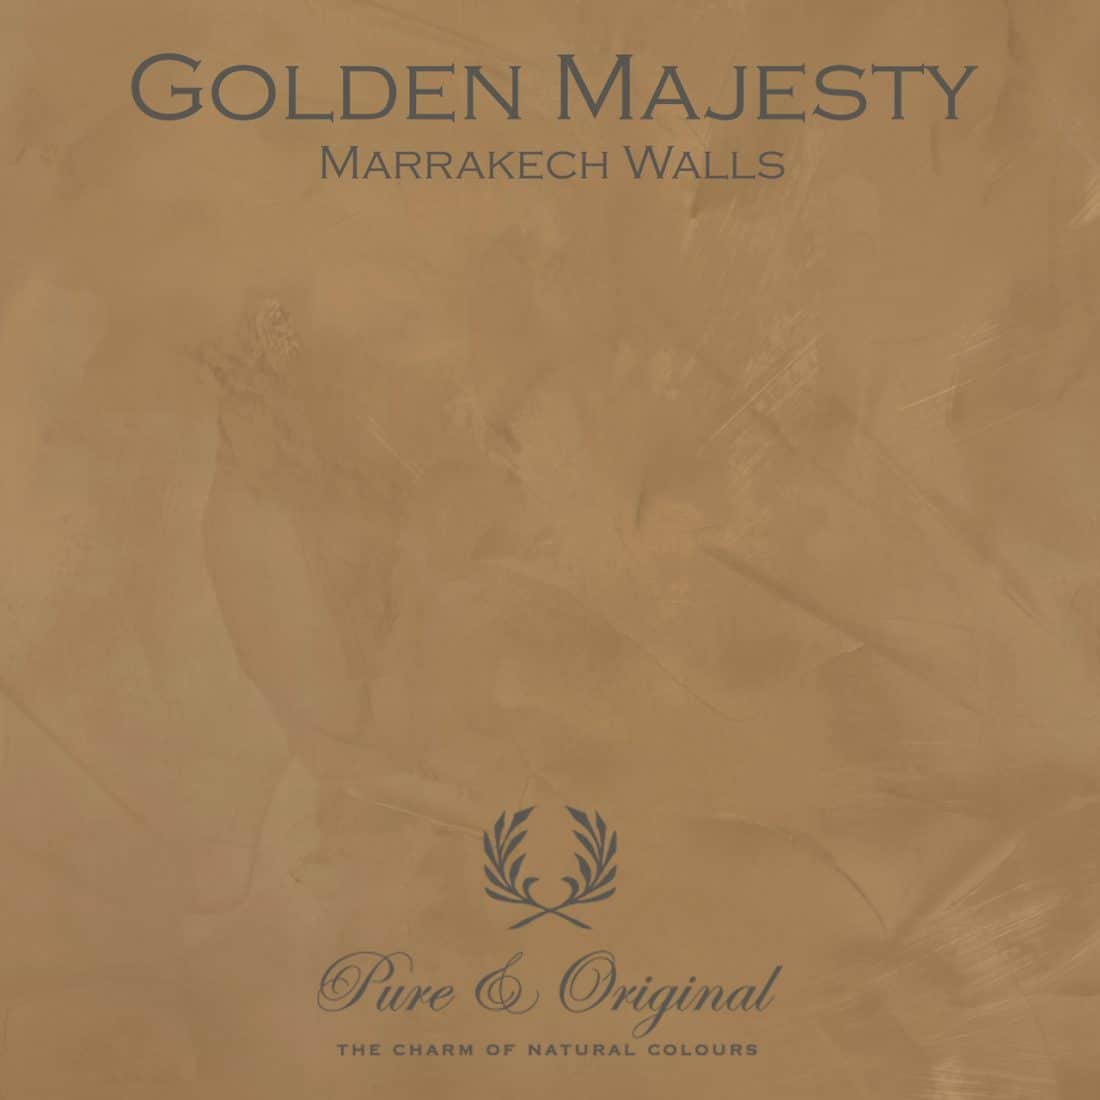 Golden Majesty Marrakech Walls Pure Original